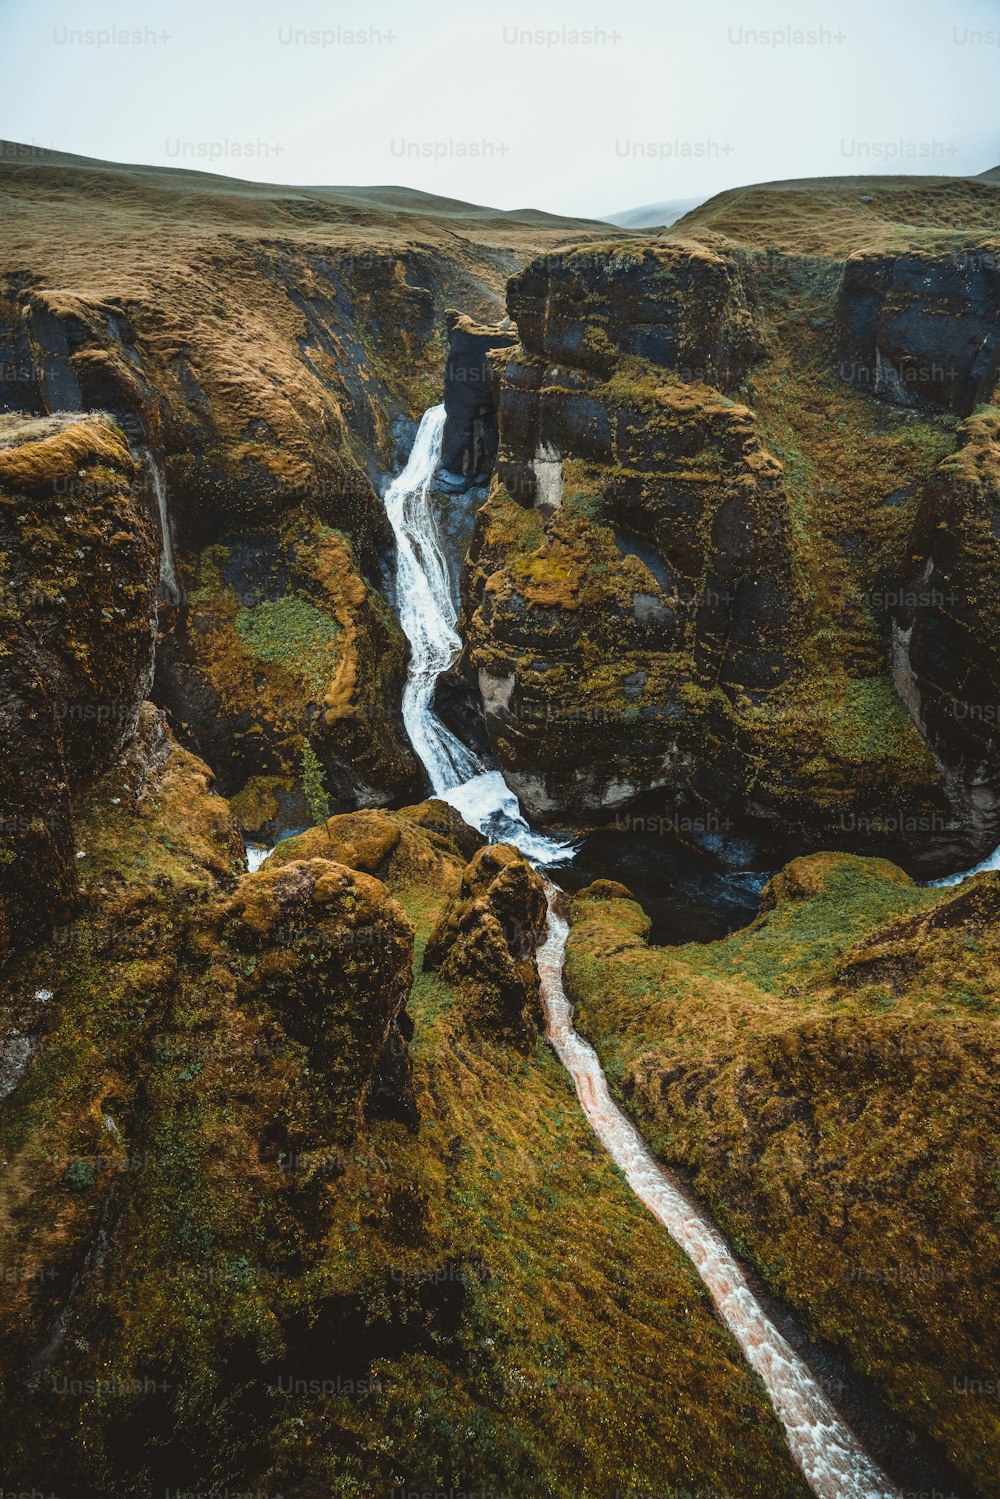 Paisaje único de Fjadrargljufur en Islandia. Destino turístico de primer orden. El cañón de Fjadrargljufur es un enorme cañón de unos 100 metros de profundidad y unos 2 kilómetros de largo, situado en el sureste de Islandia.